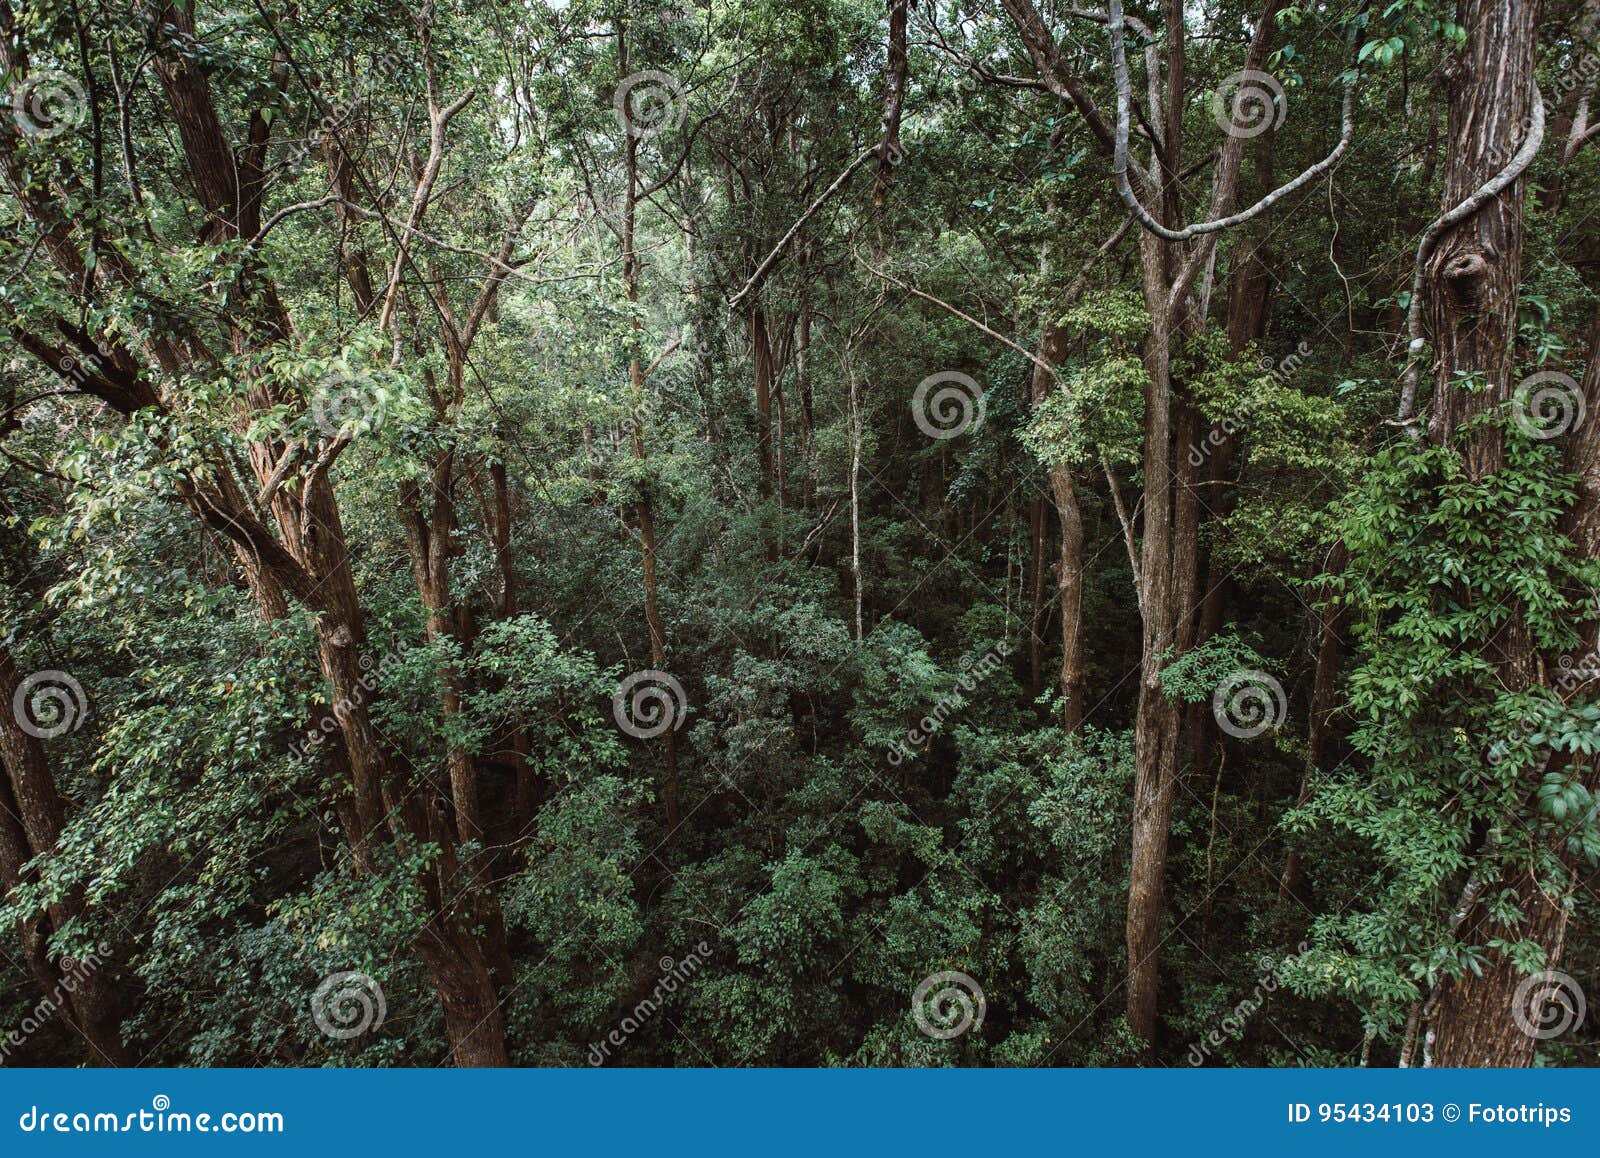 Тайга и жестколистные леса и кустарники